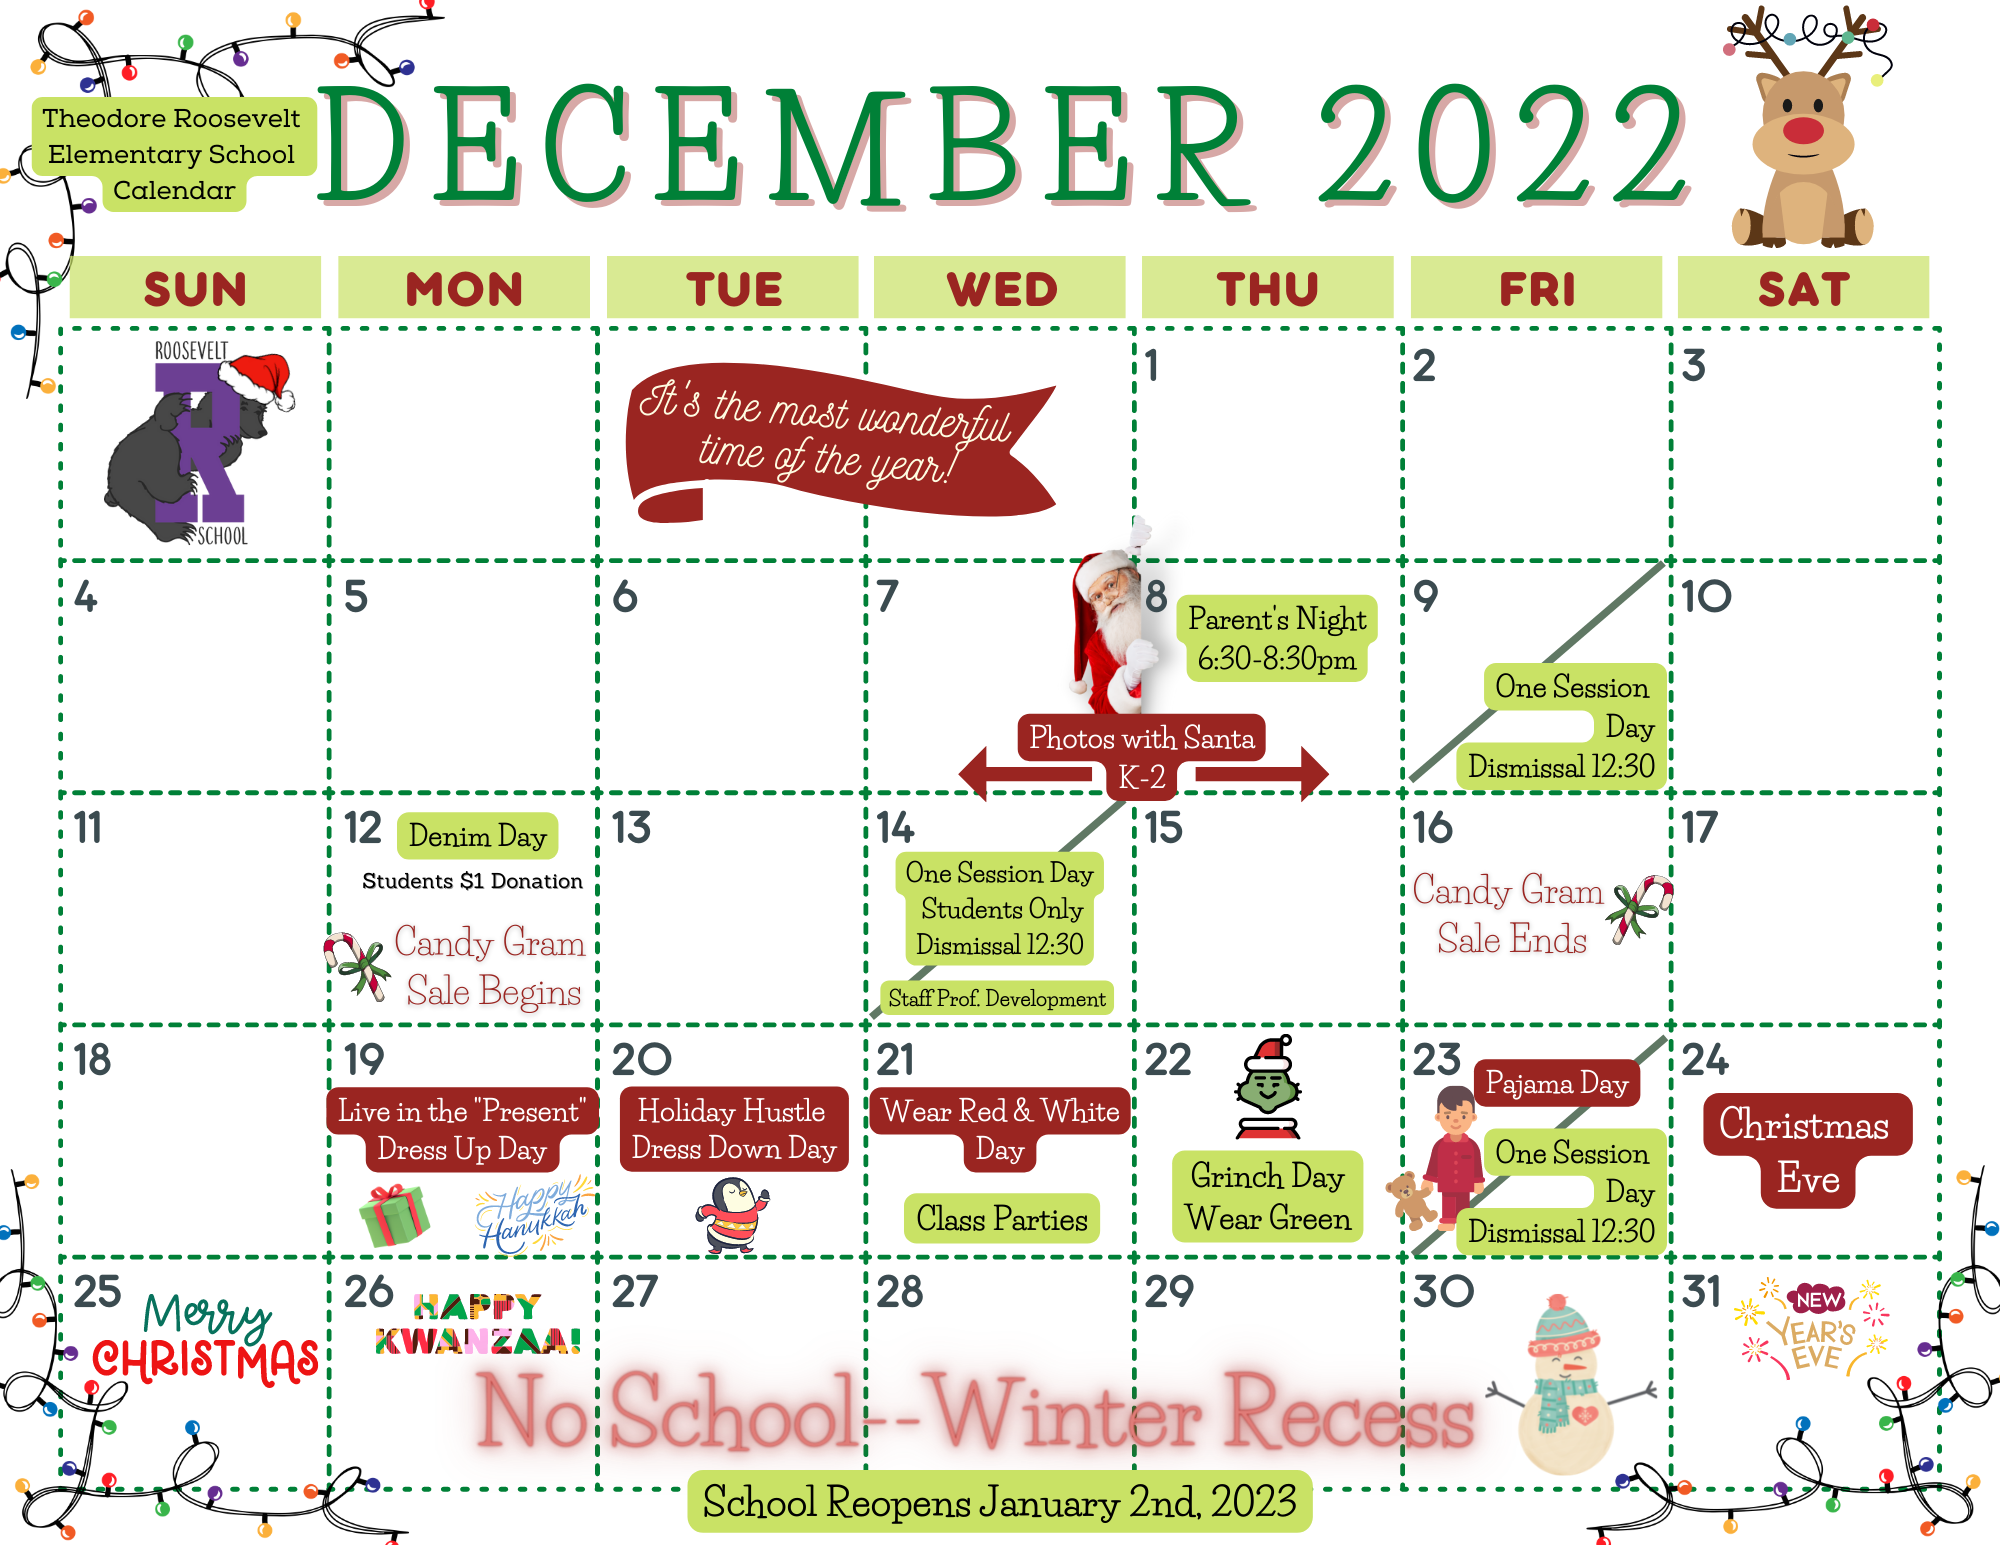 Roosevelt School December 2022 Calendar